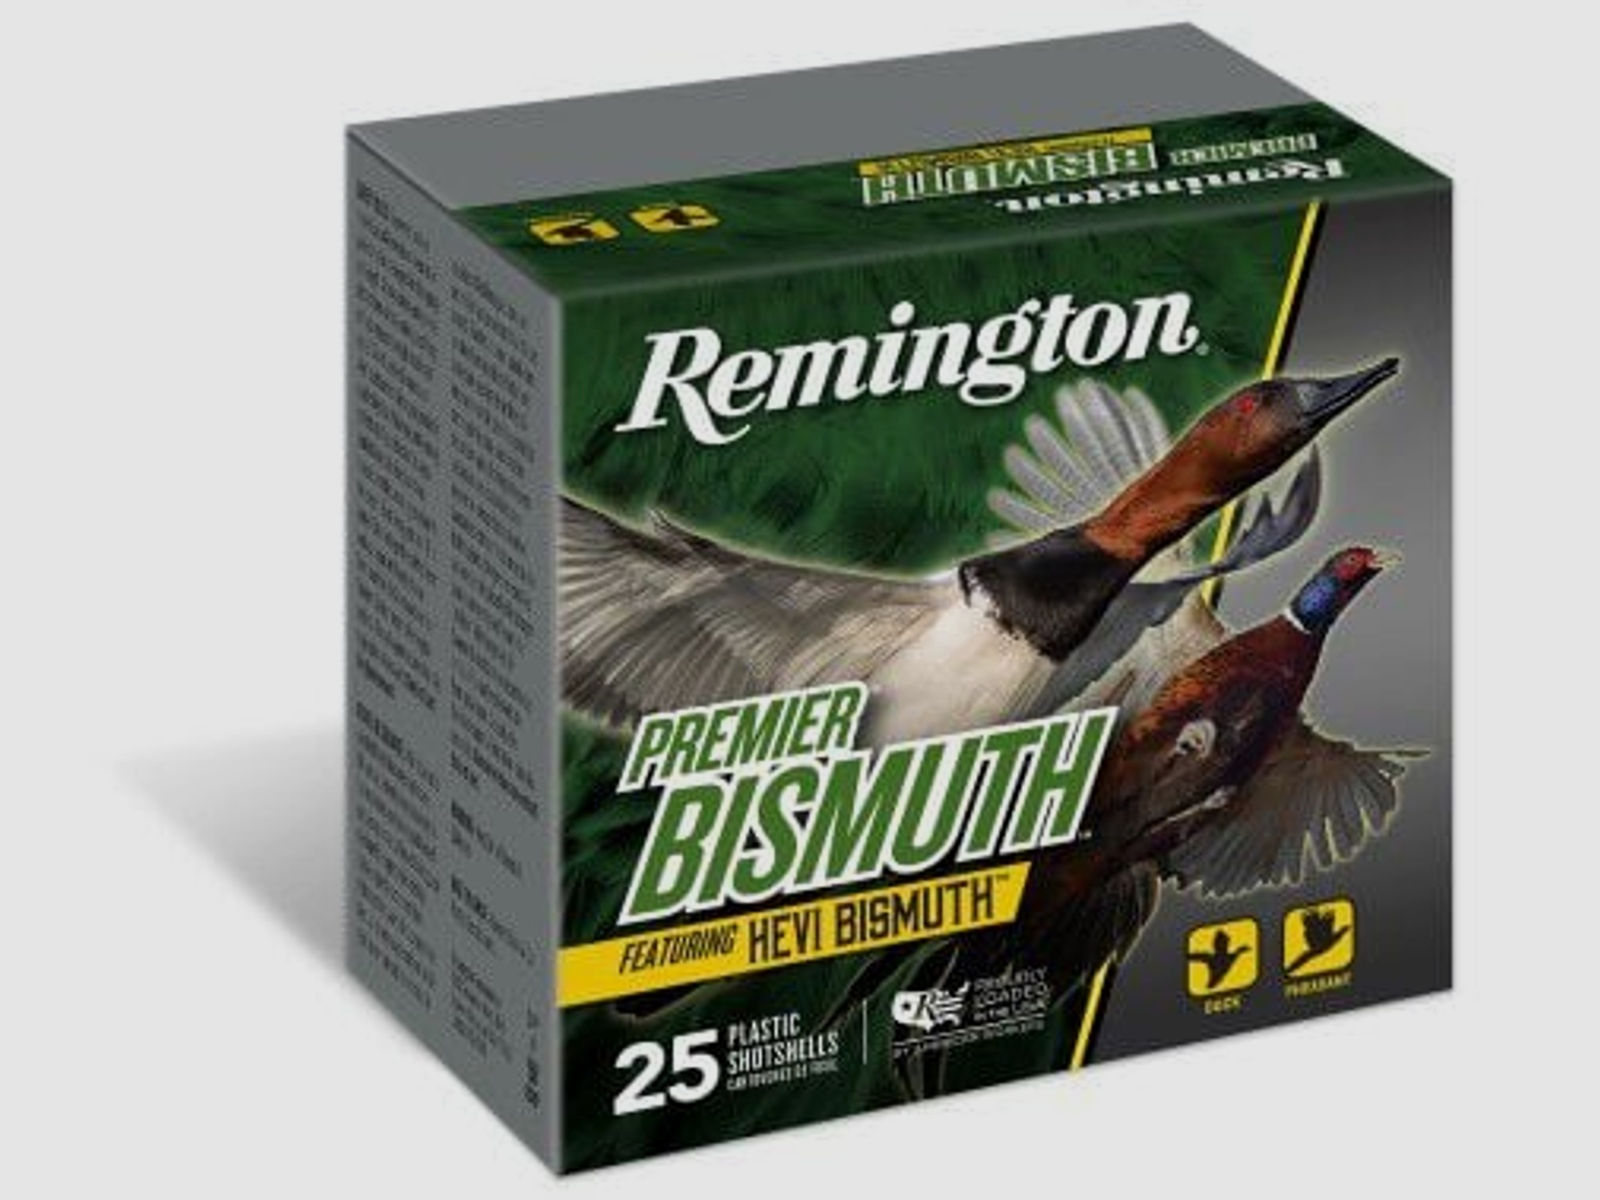 Remington Schrotpatronen Premier Bismuth 25 Patronen .12/76 / #5 (3mm) 40g